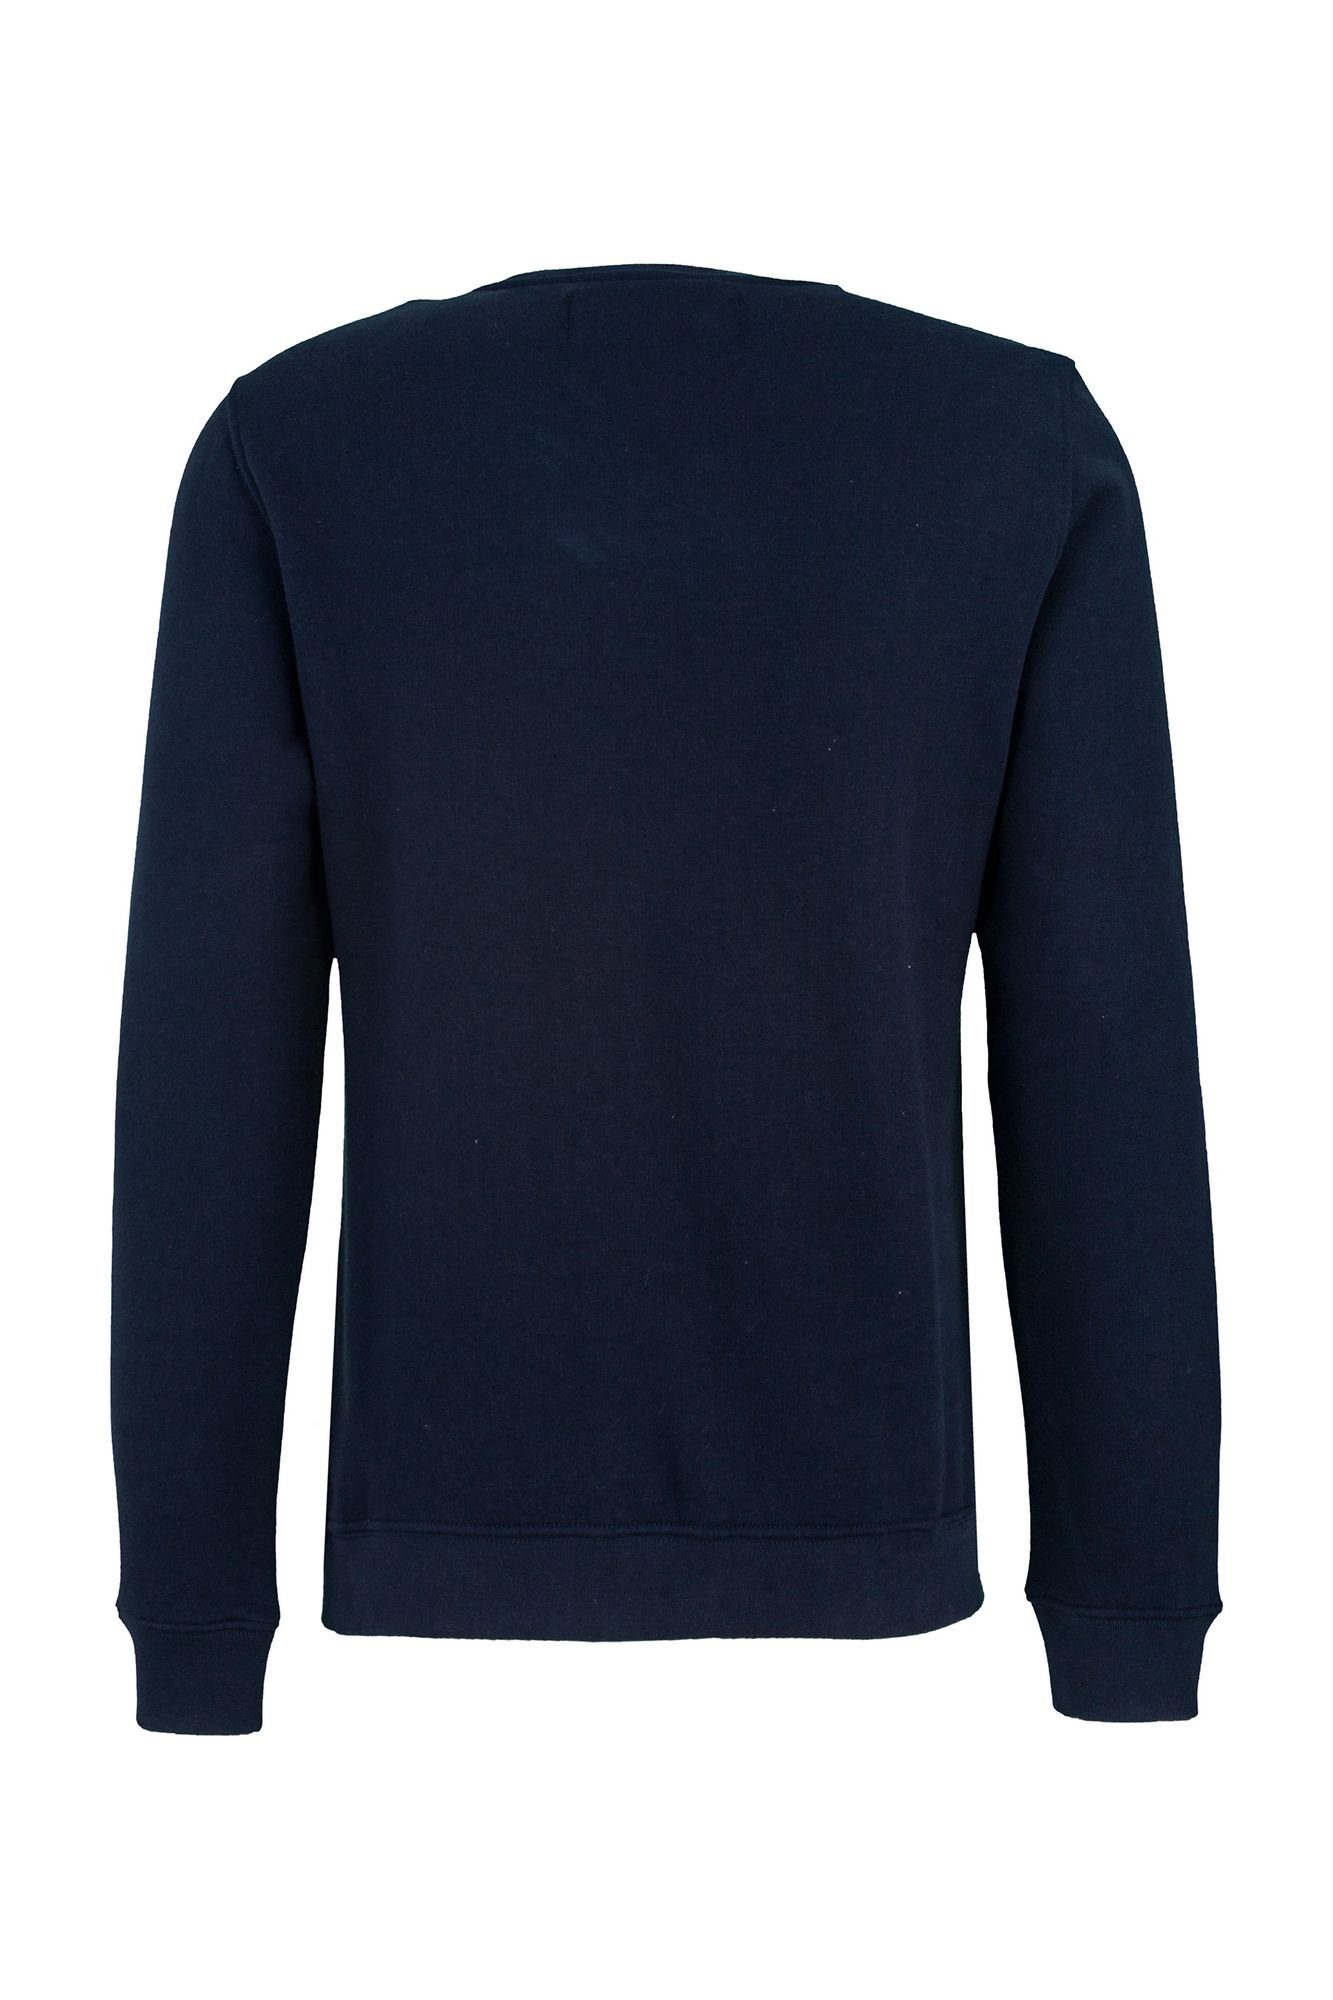 Replay Sweatshirt Cotton Fleece